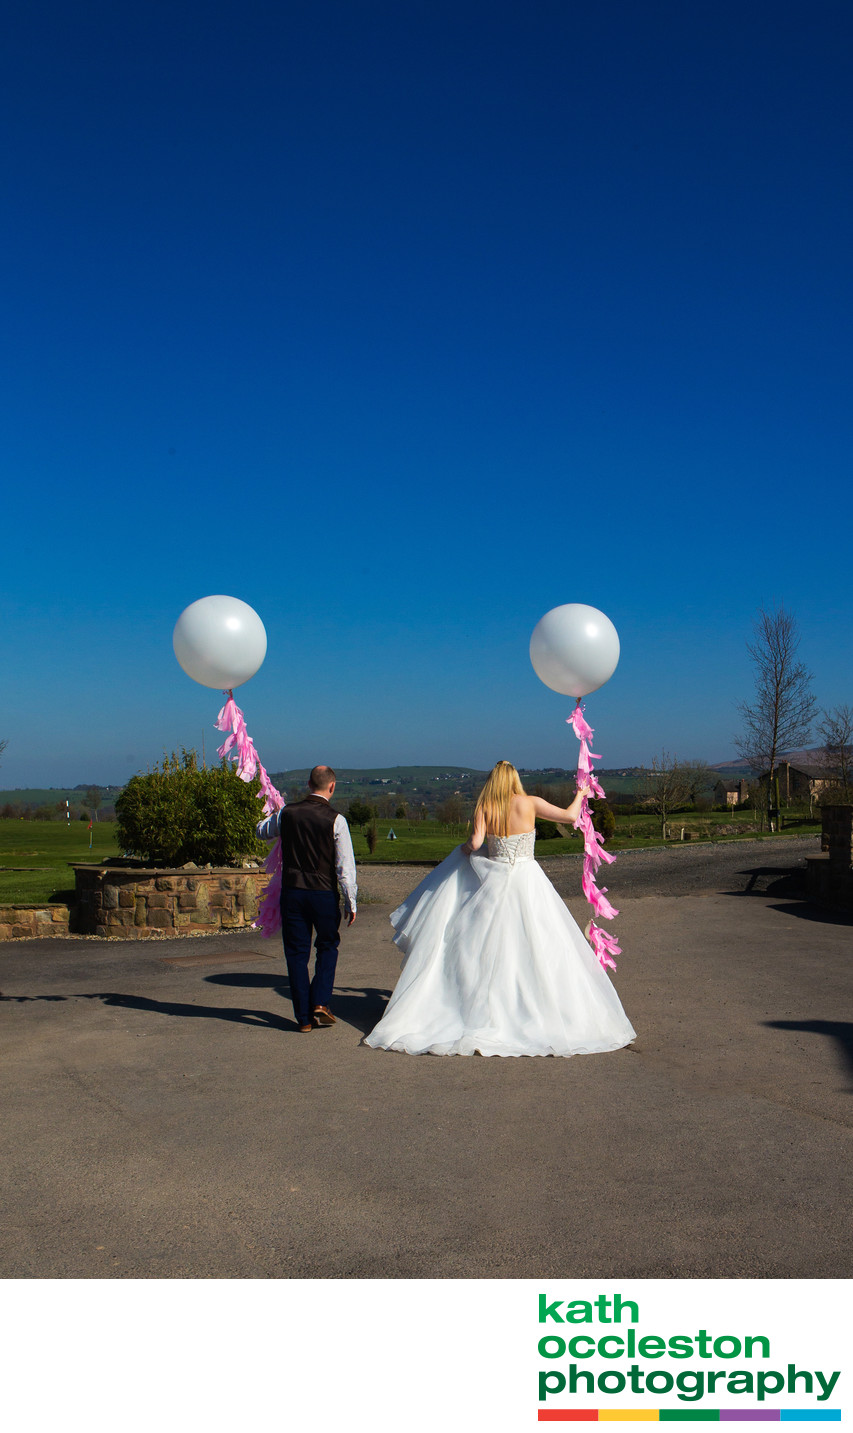 Wedding balloons at The Oak Royal, Chorley